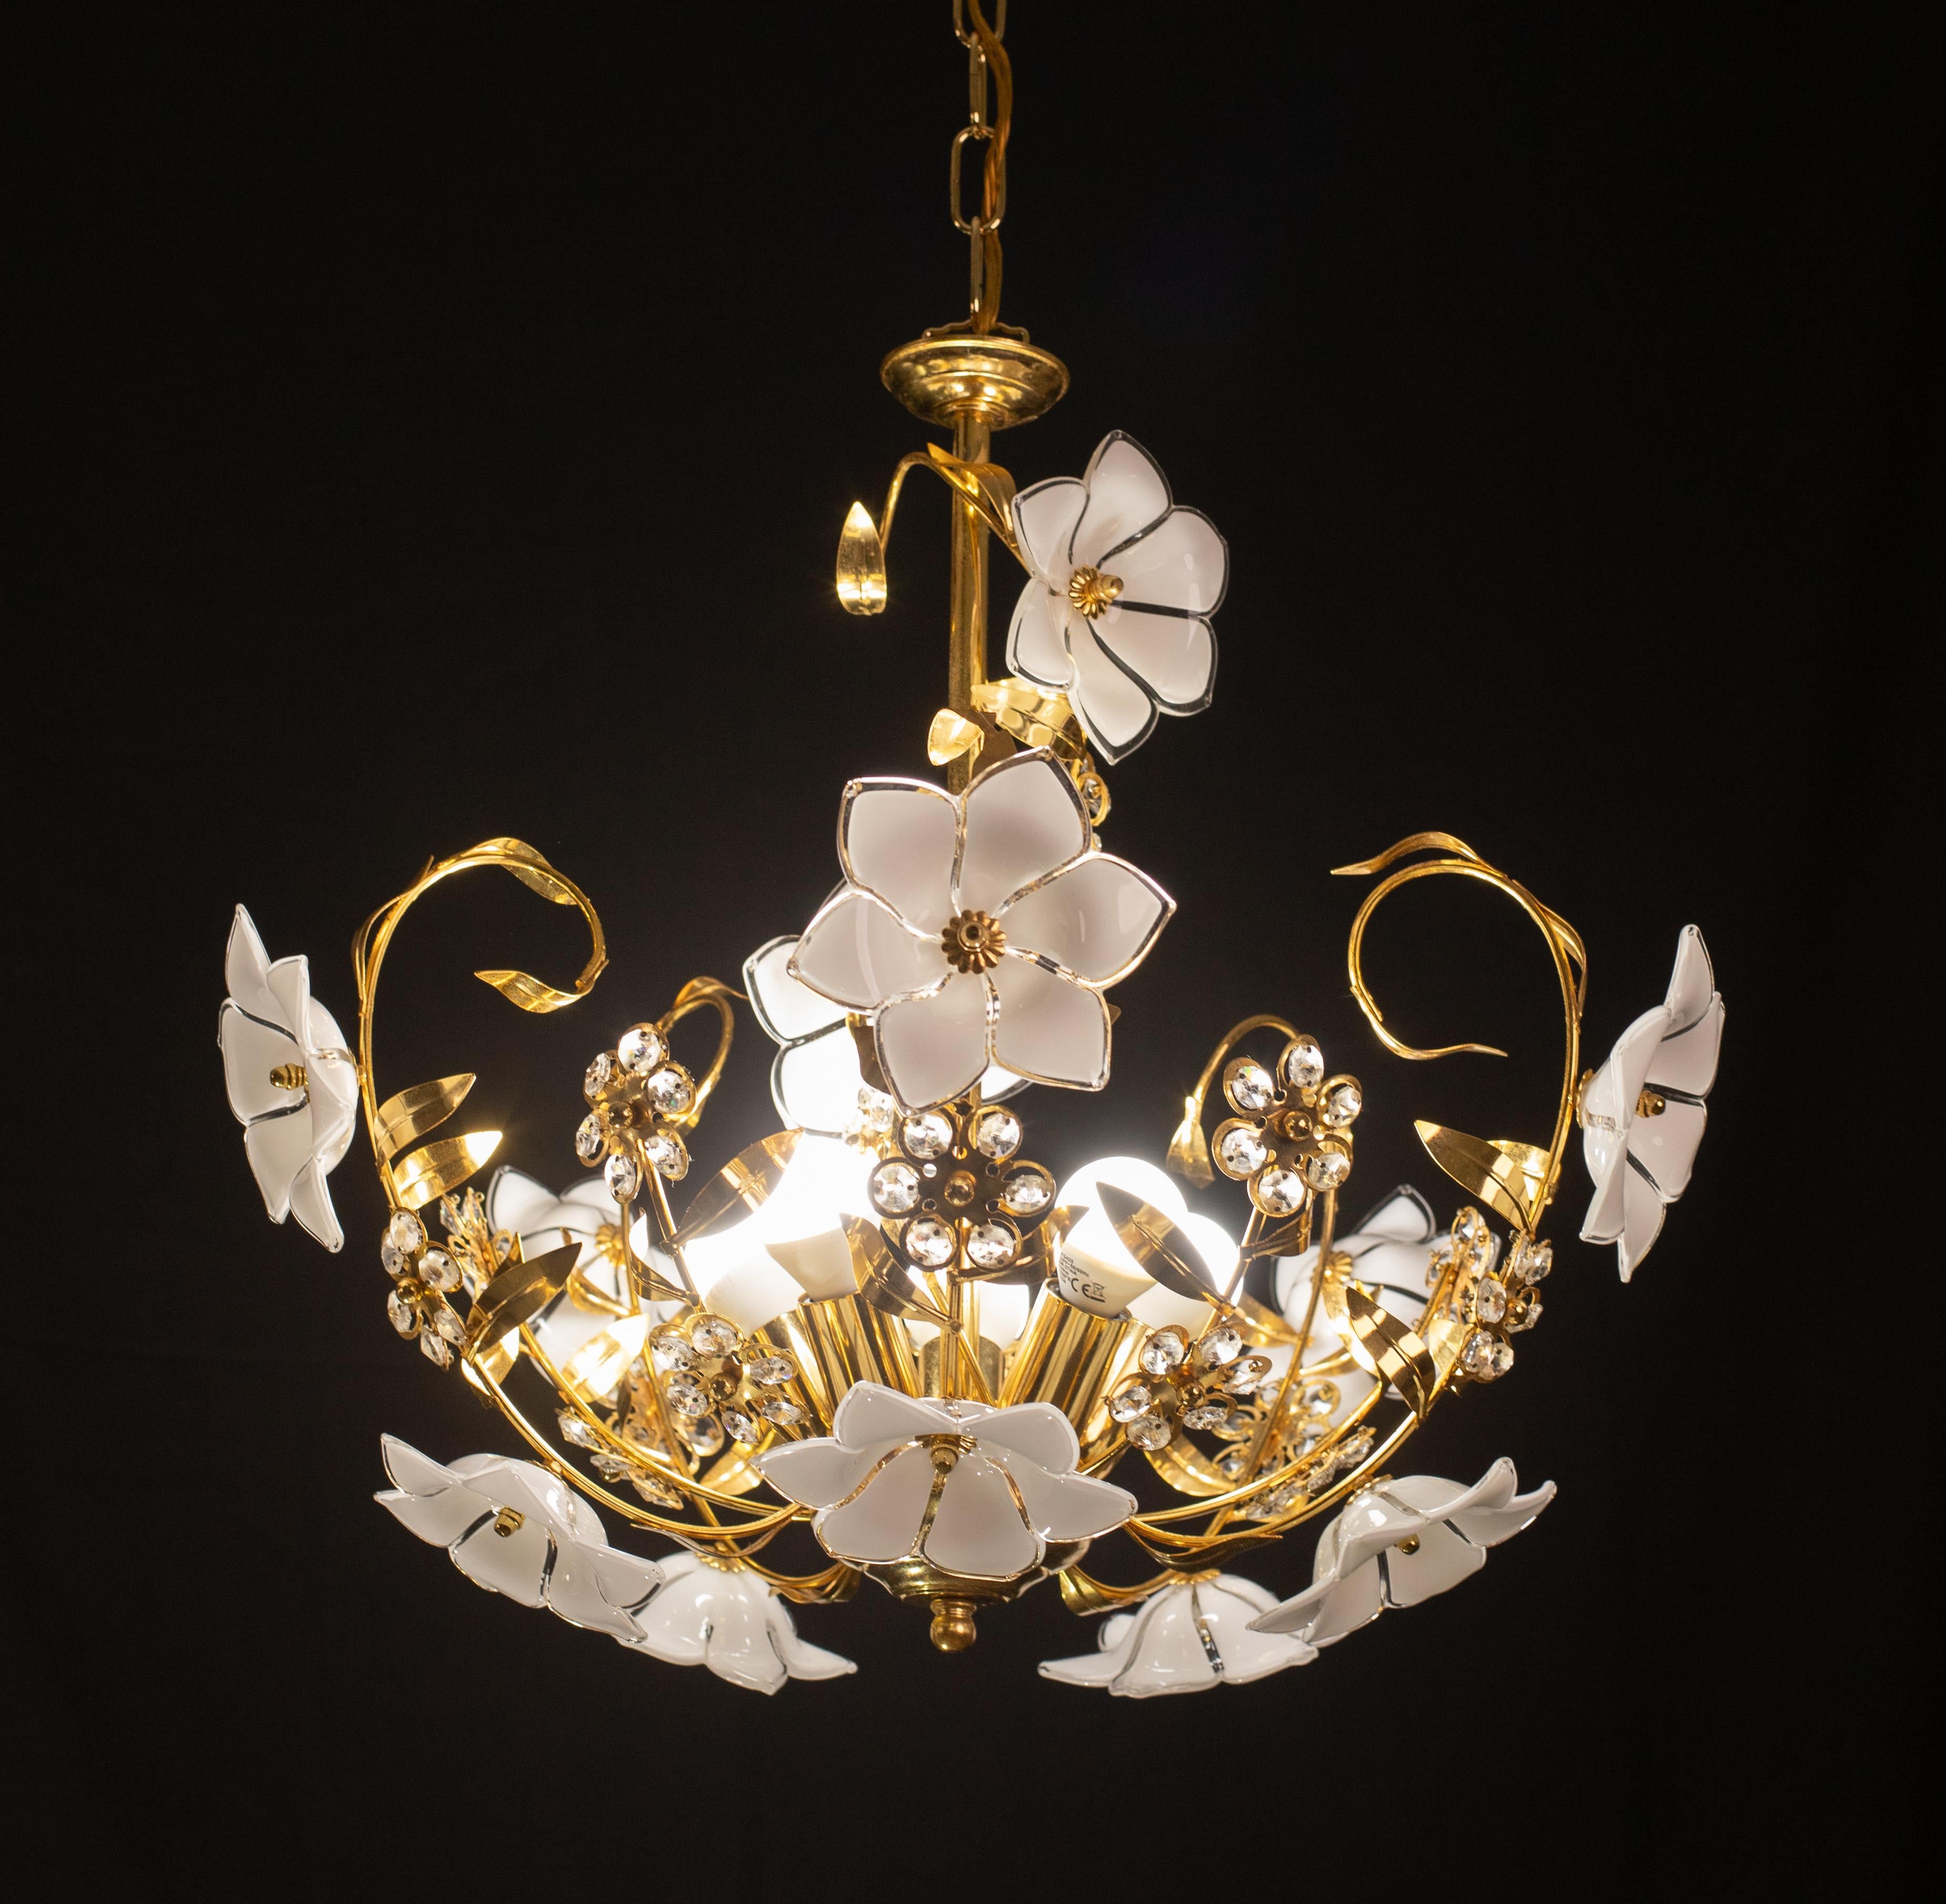 Vintage Murano Glas Kronleuchter voller weißer Blumen aus Muranoglas.
Der Kronleuchter hat 5 Lichtpunkte mit E14-Fassung, die für Usa-Standards umverdrahtet werden können.
Der Rahmen ist aus Goldbad in gutem Vintage-Zustand.
Die Höhe des